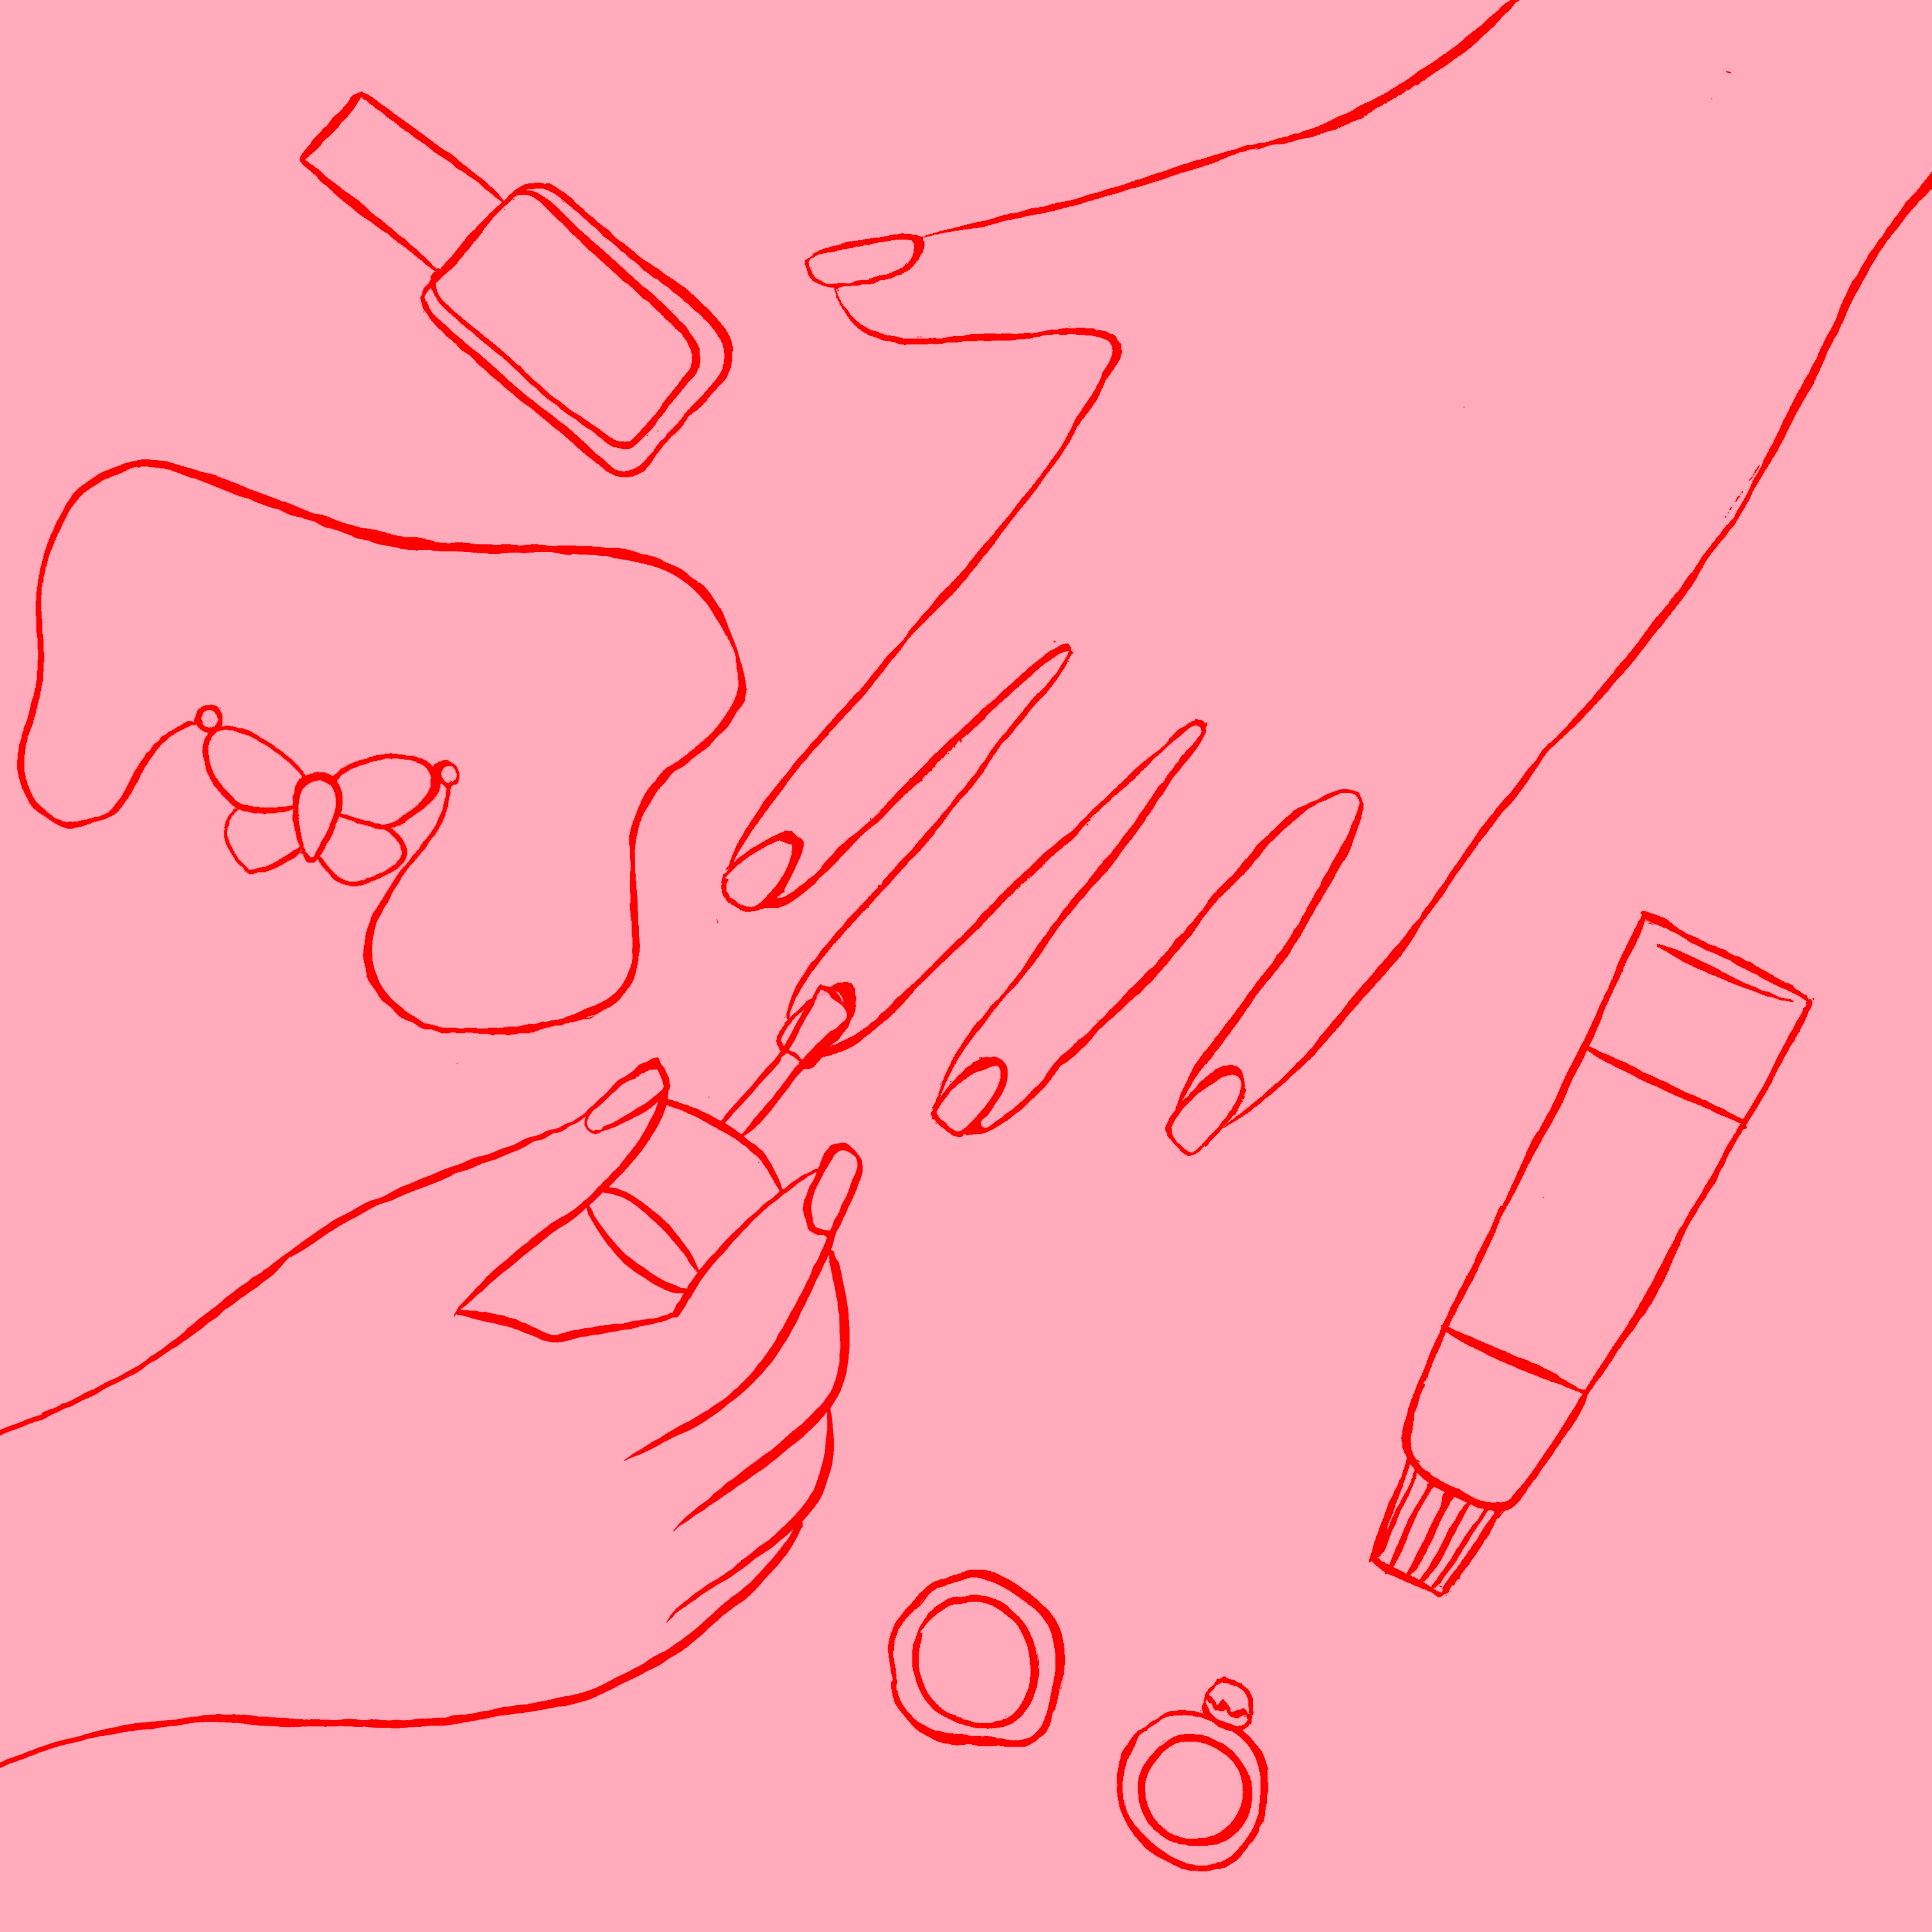 Illustration artwork of applying nail varnish